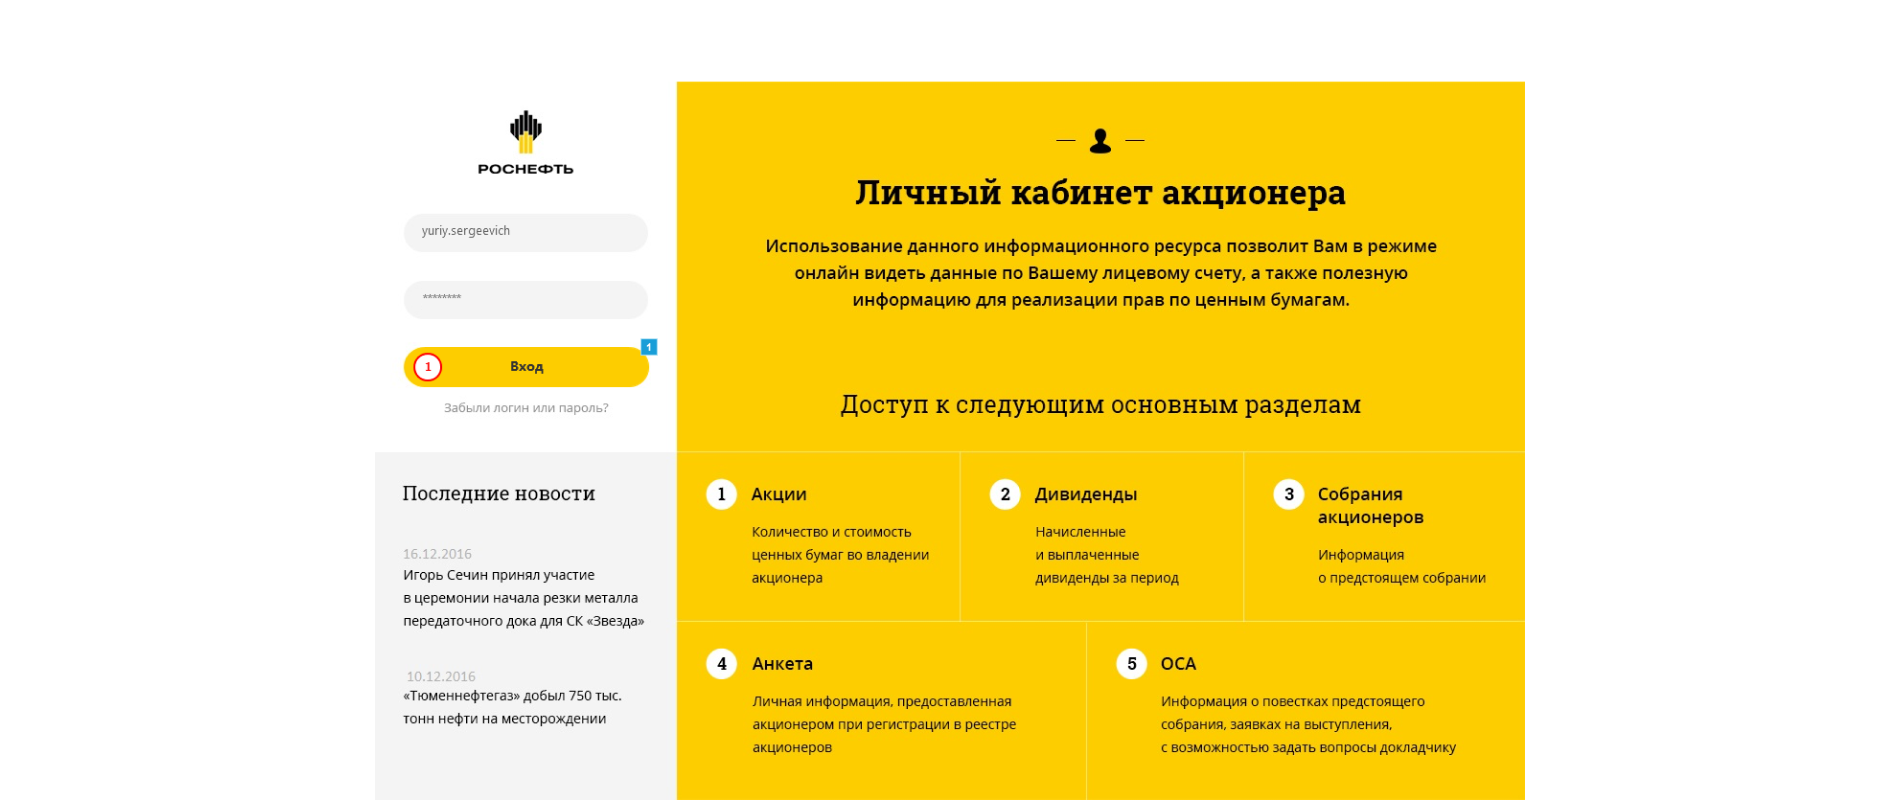 Роснефть: Личный кабинет акционера кейс проекта